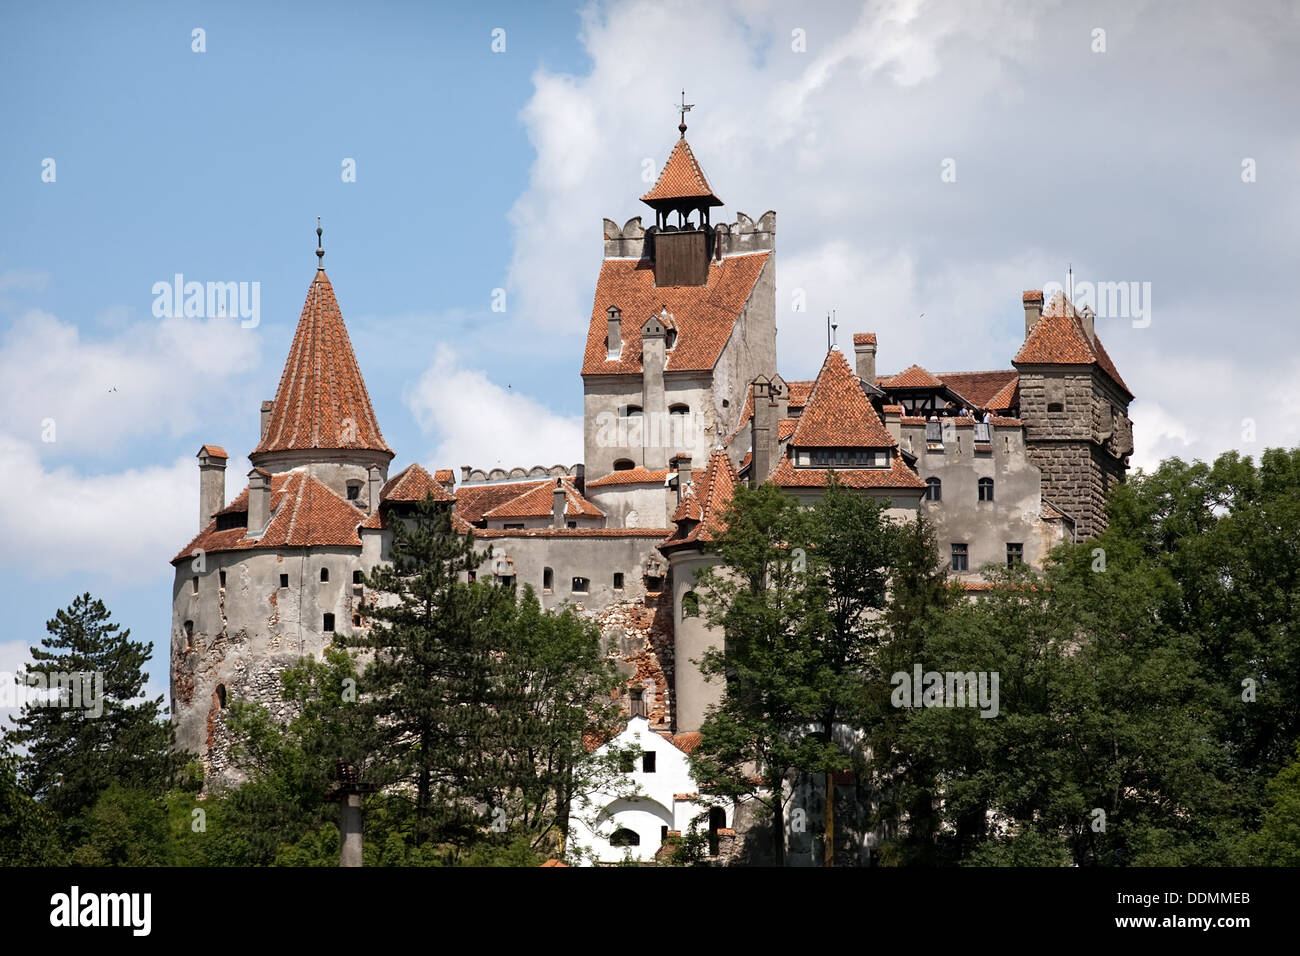 Vue de face de son château médiéval, la Valachie, Roumanie Banque D'Images